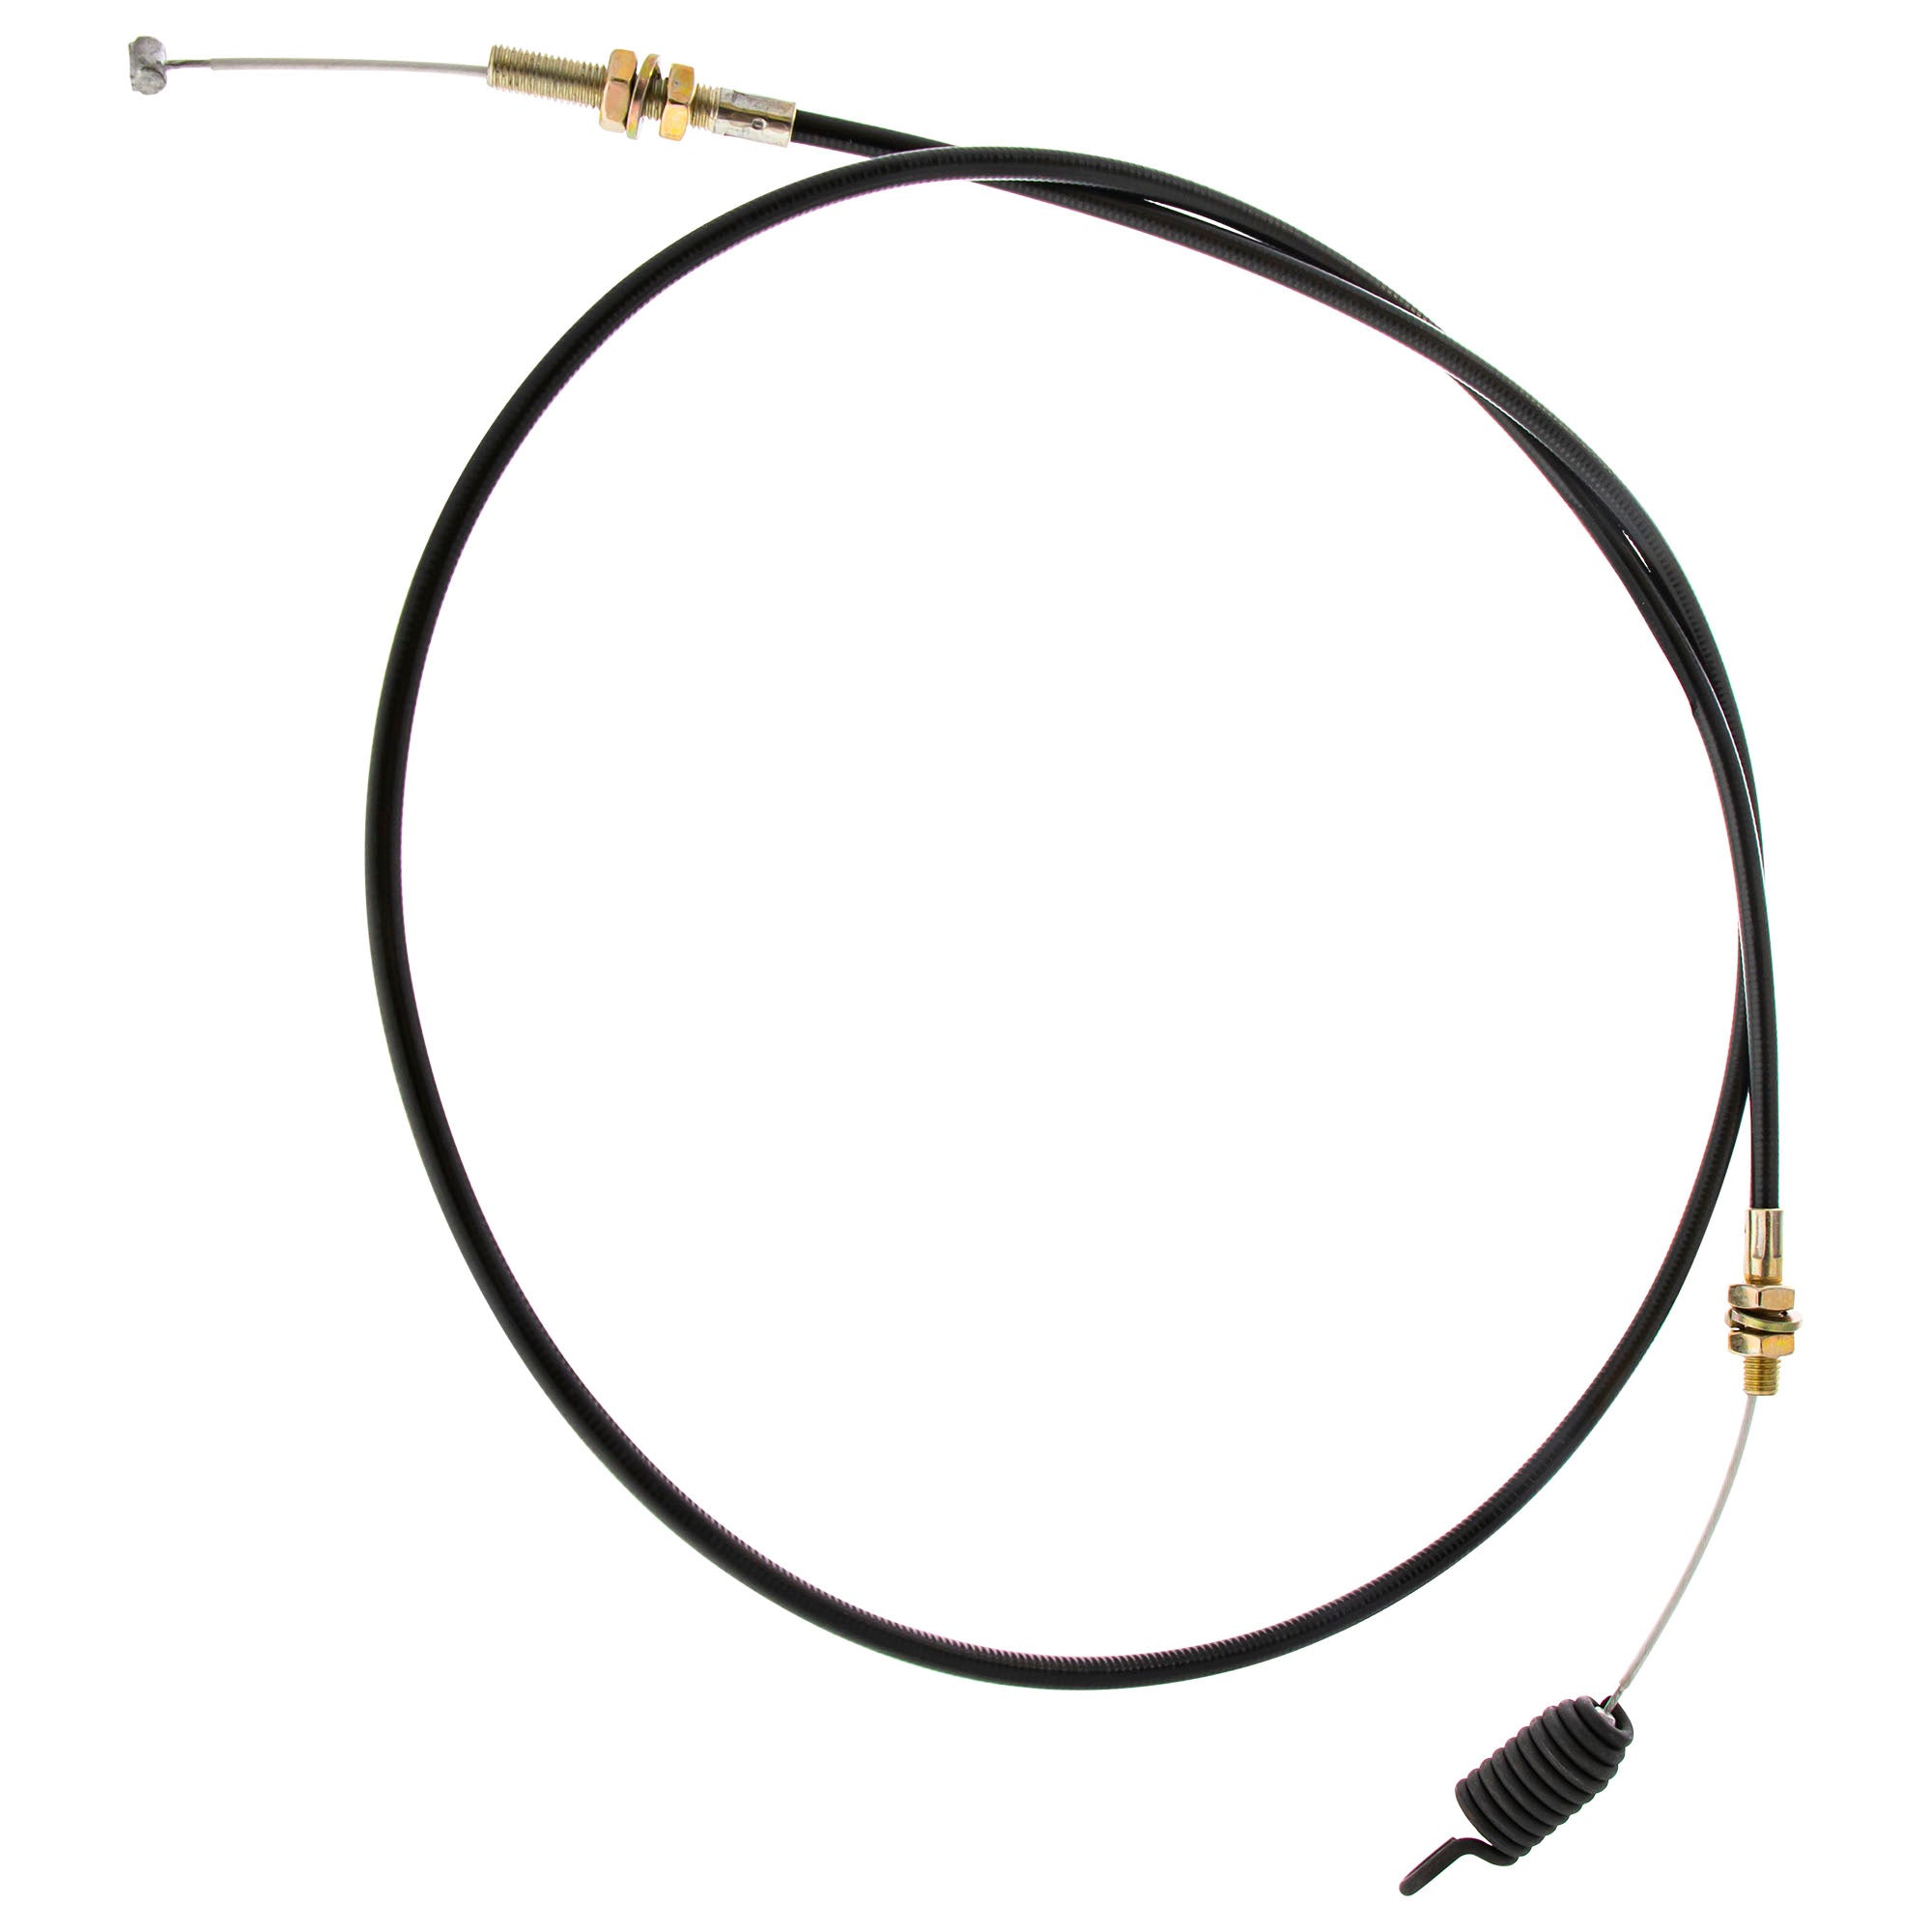 CUB CADET 946-0908 Clutch Control Cable